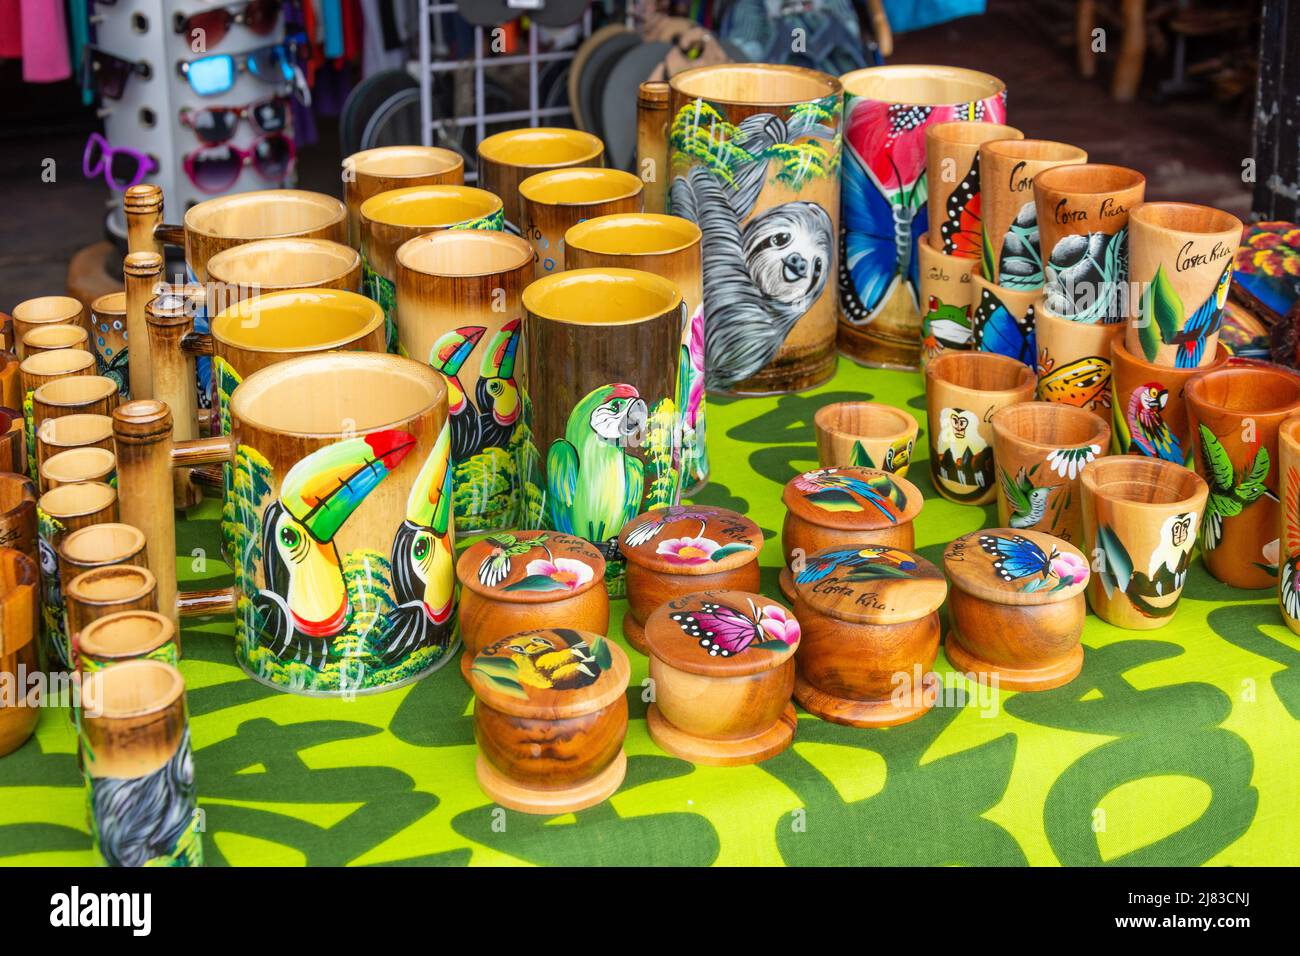 Tazas pintadas y contenedores en tienda de souvenirs, Puerto Viejo de Talamanca, Provincia de Limón, República de Costa Rica Foto de stock